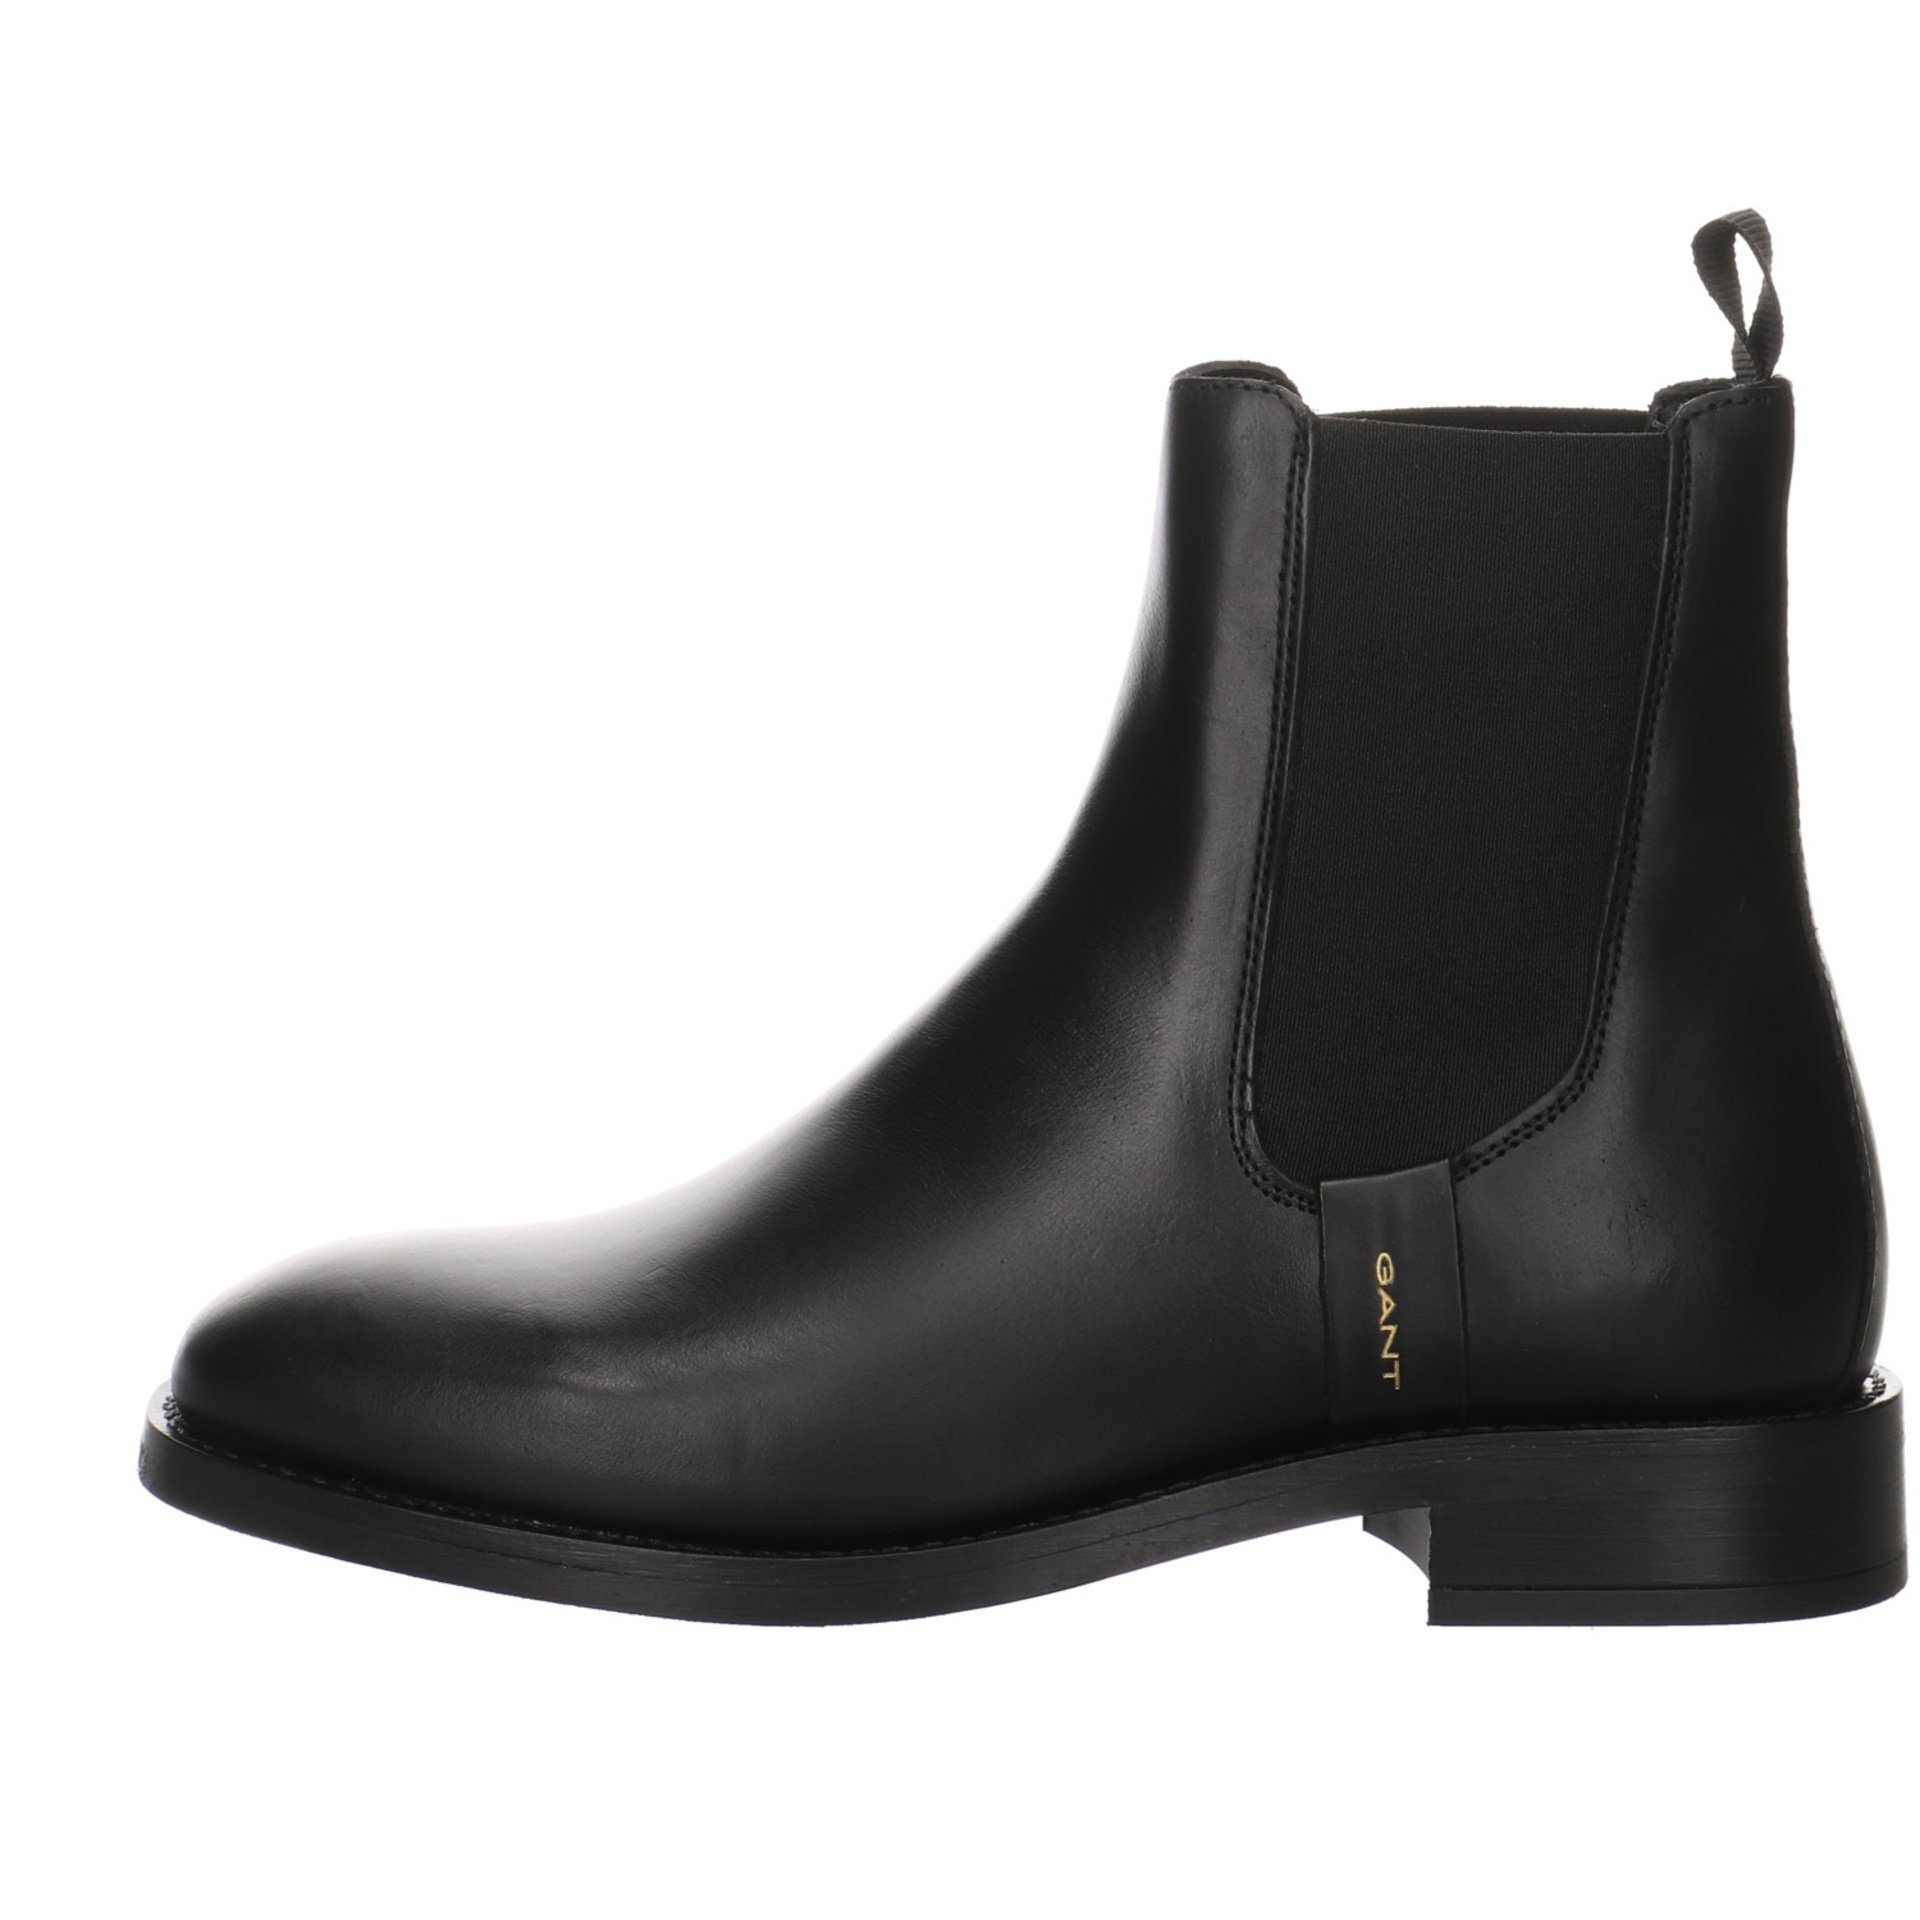 Stiefeletten Schuhe Boots Gant Damen Chelsea Leder-/Textilkombination FAYY Stiefelette